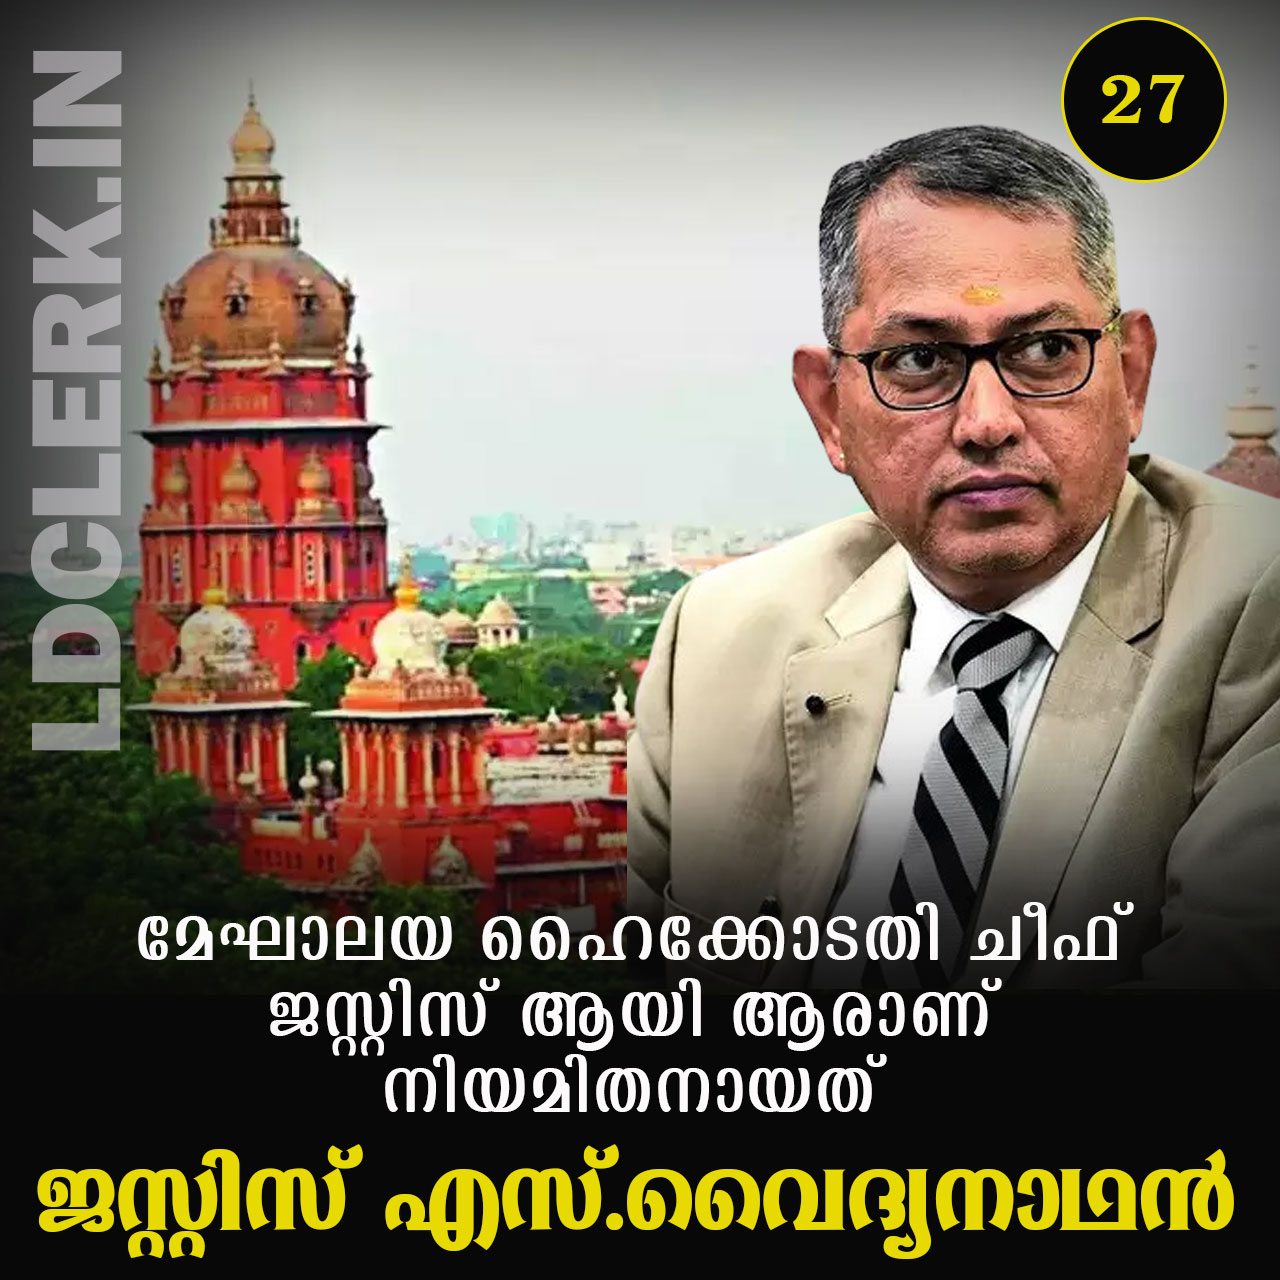 Justice S. Vaidyanathan